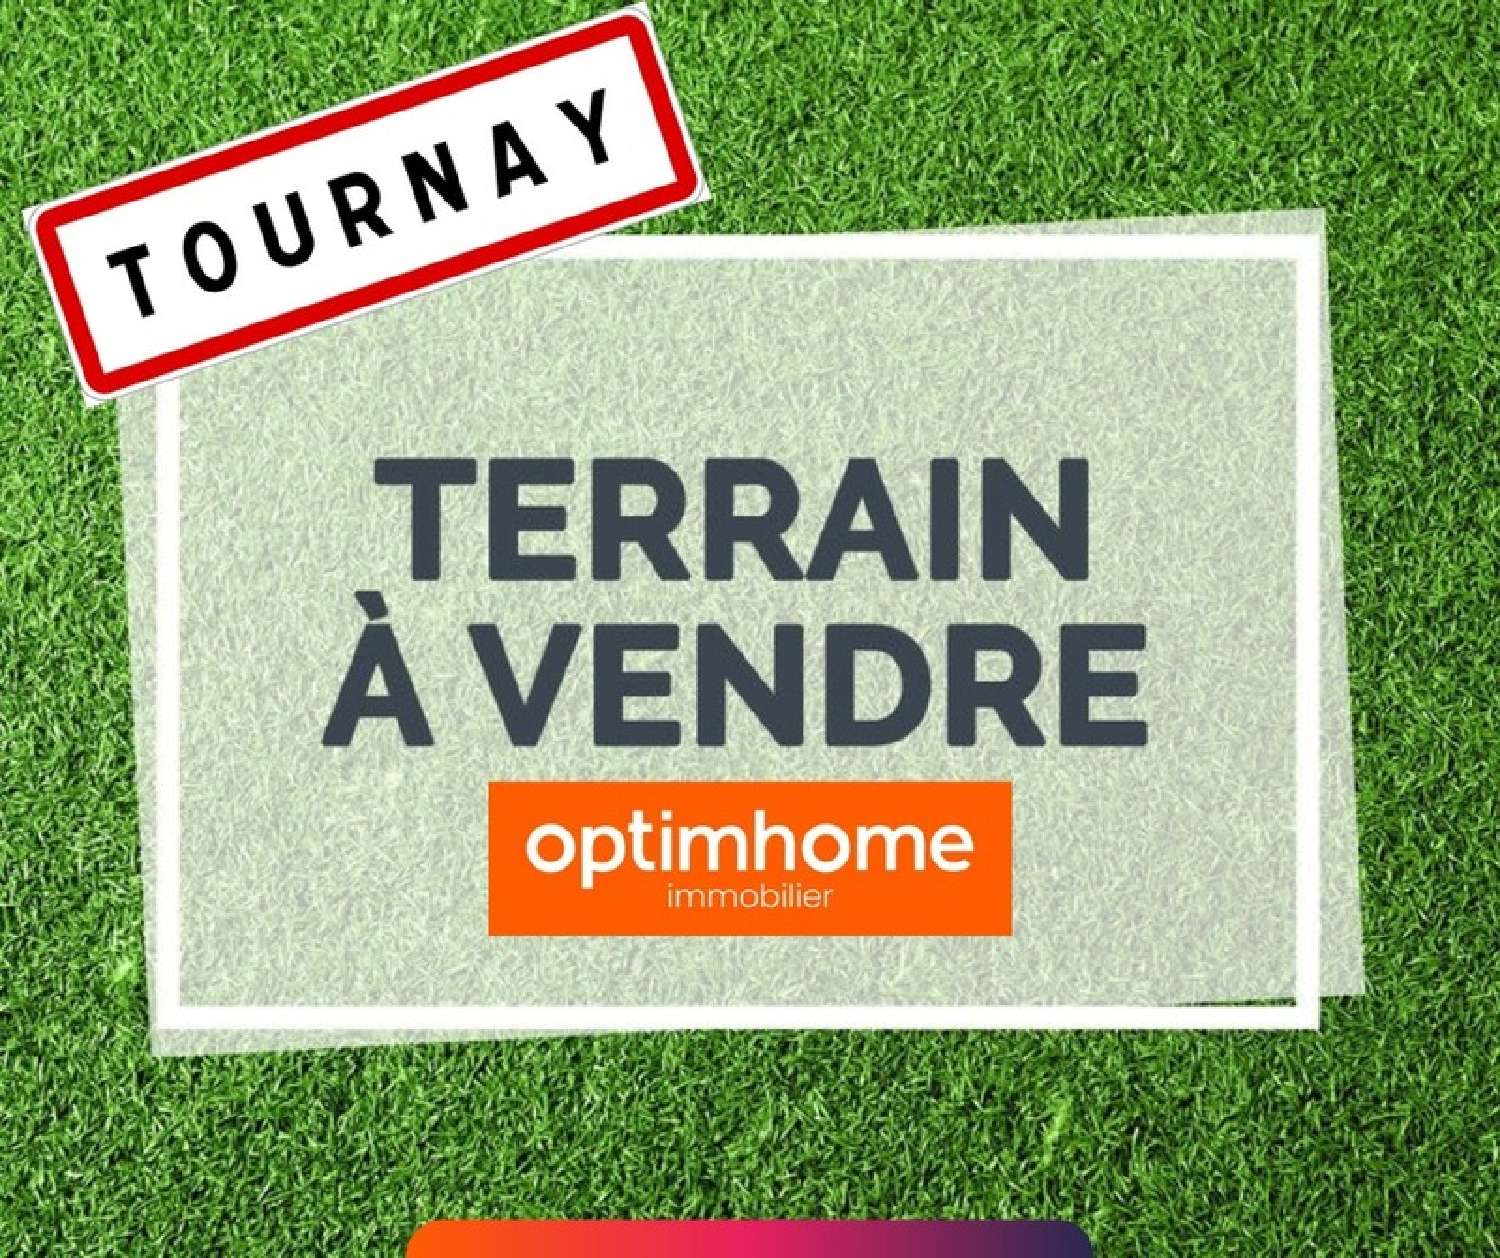  te koop terrein Tournay Hautes-Pyrénées 1